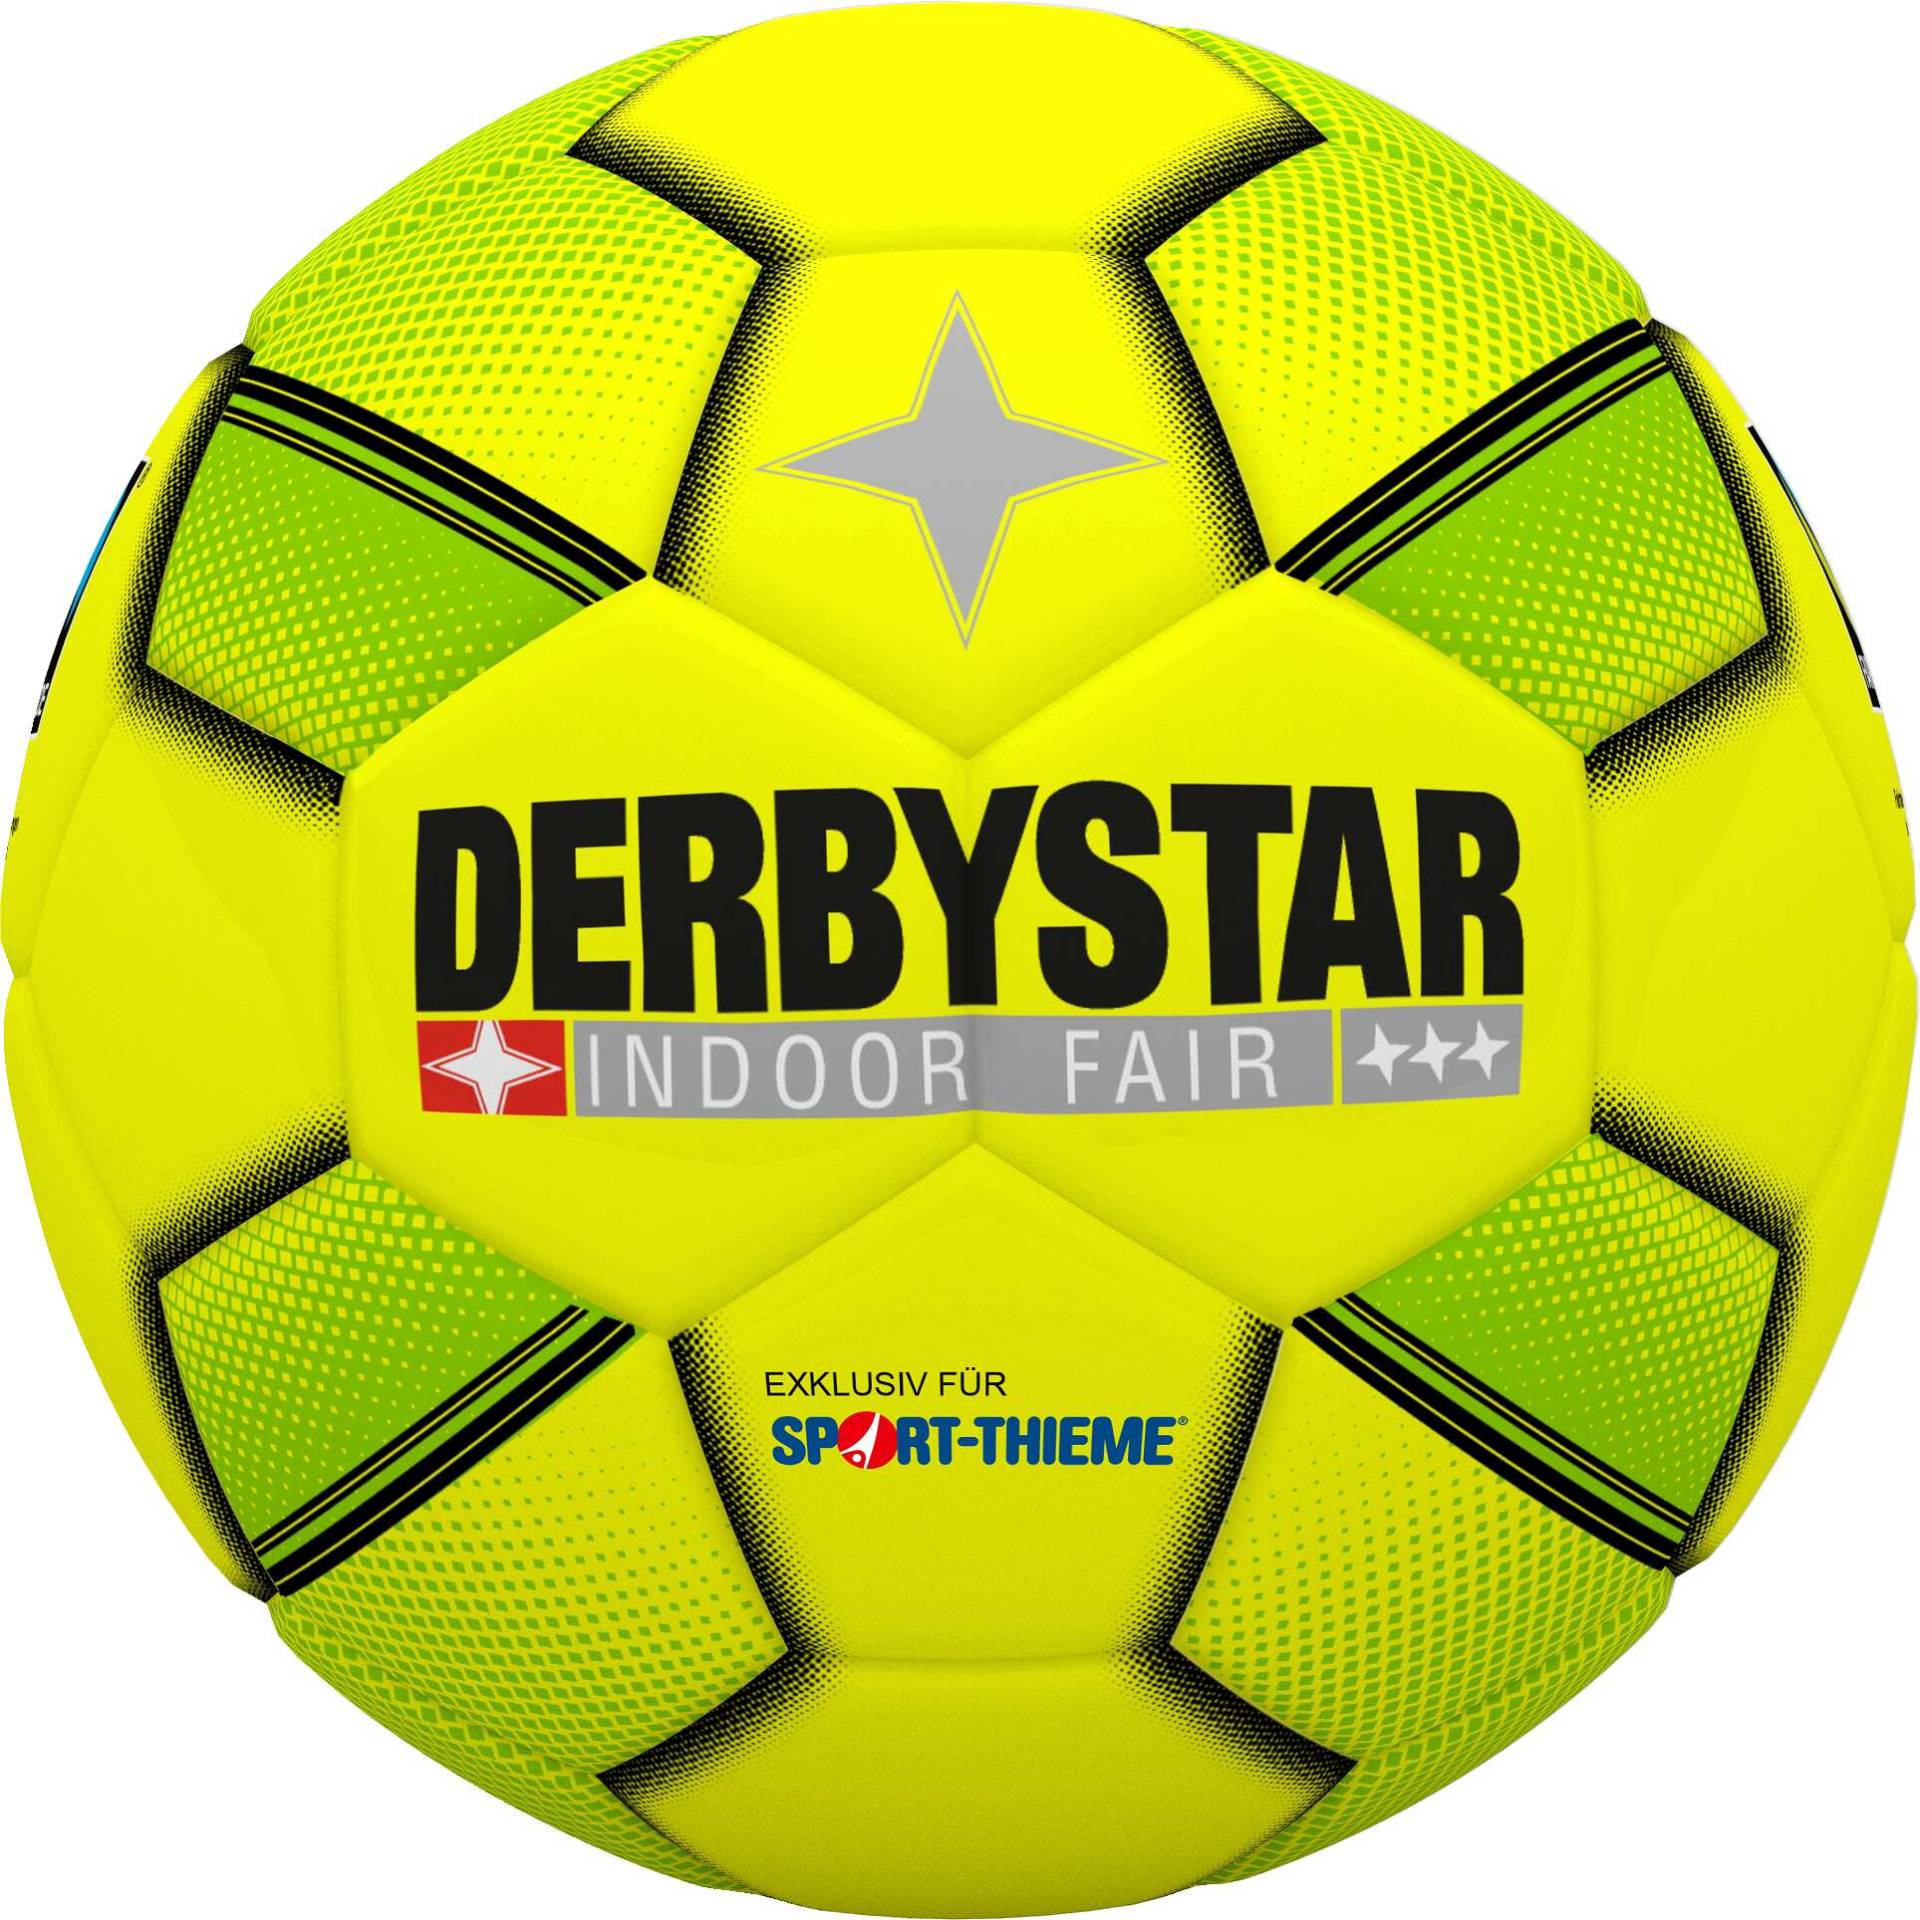 Derbystar Hallenfußball "Indoor Fair" von Derbystar